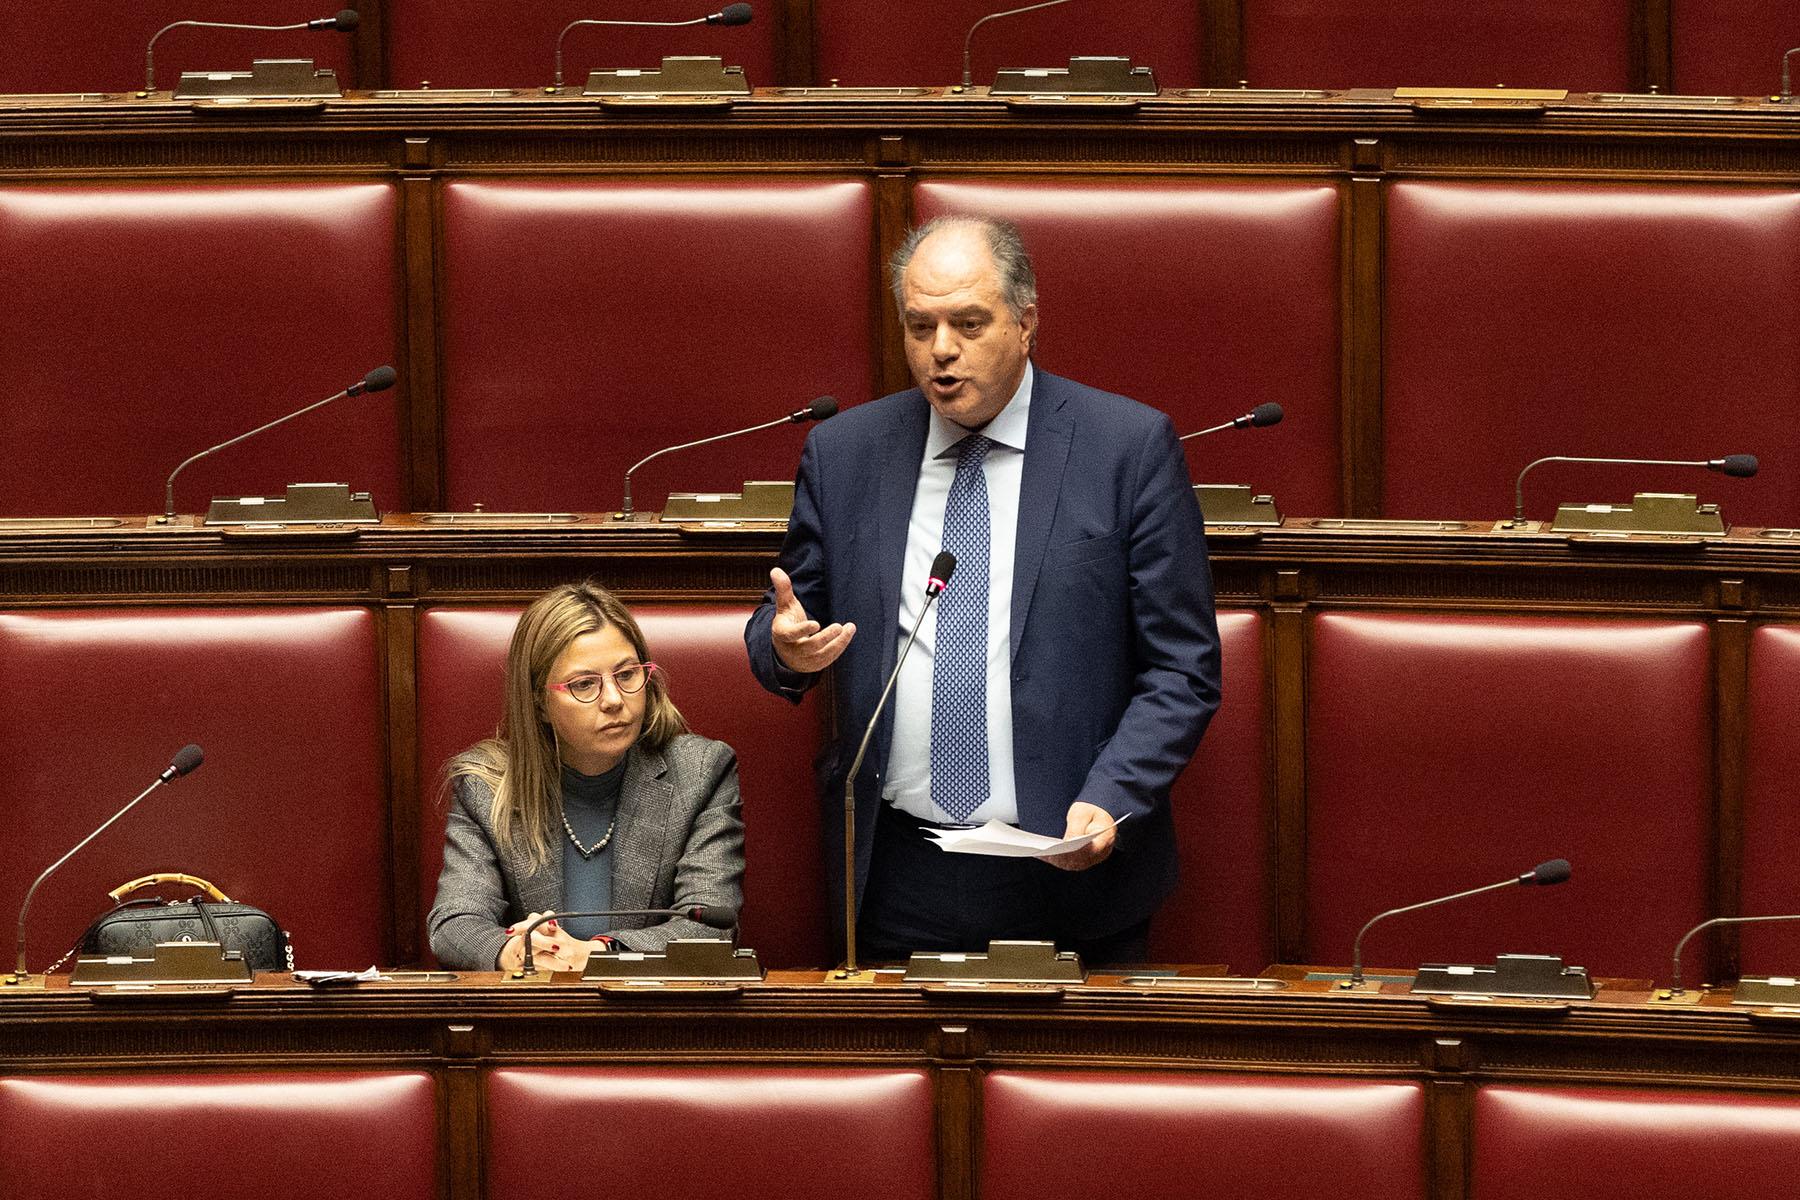 Intervento del deputato Giuseppe Castiglione